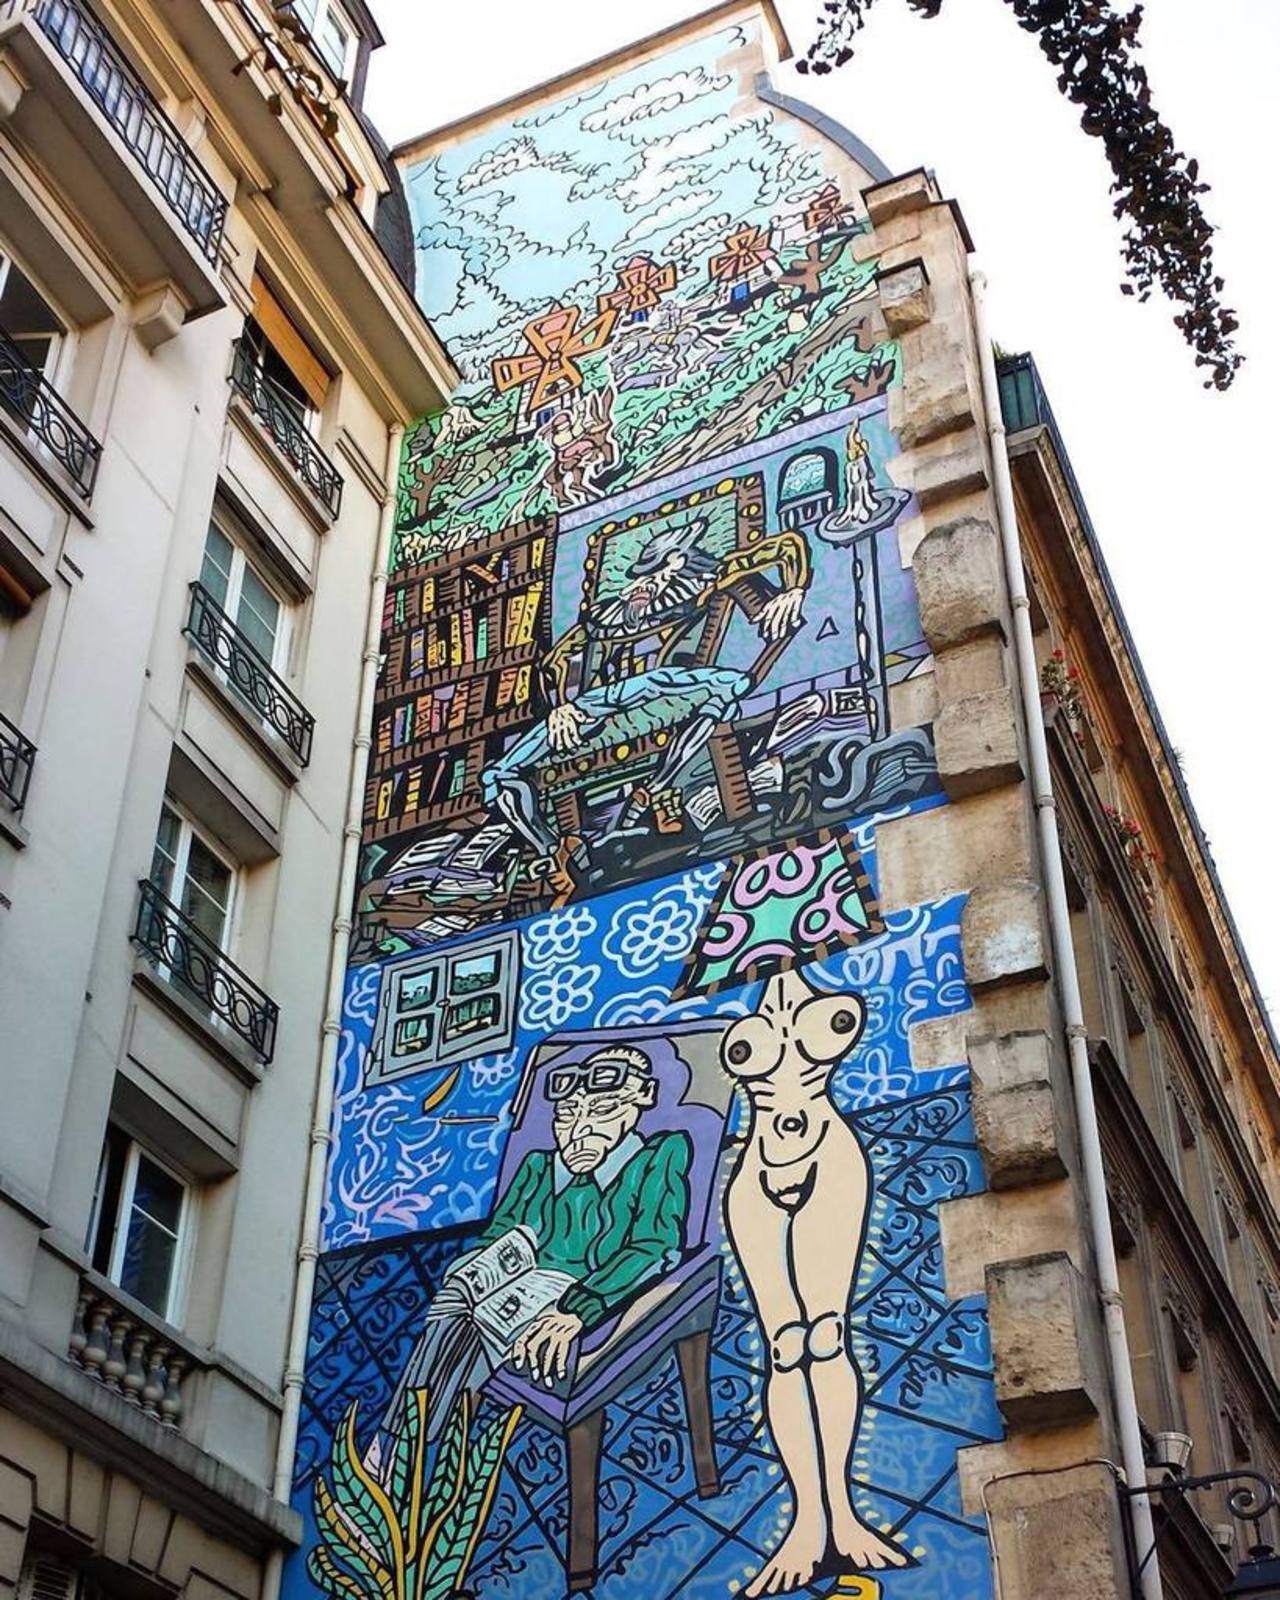 #streetart #street #paris #wall #art #graffiti #urban #urbanart 
#parisstreetart #streetartparis #parisgraffiti #gr… https://t.co/cBVAVEflTt